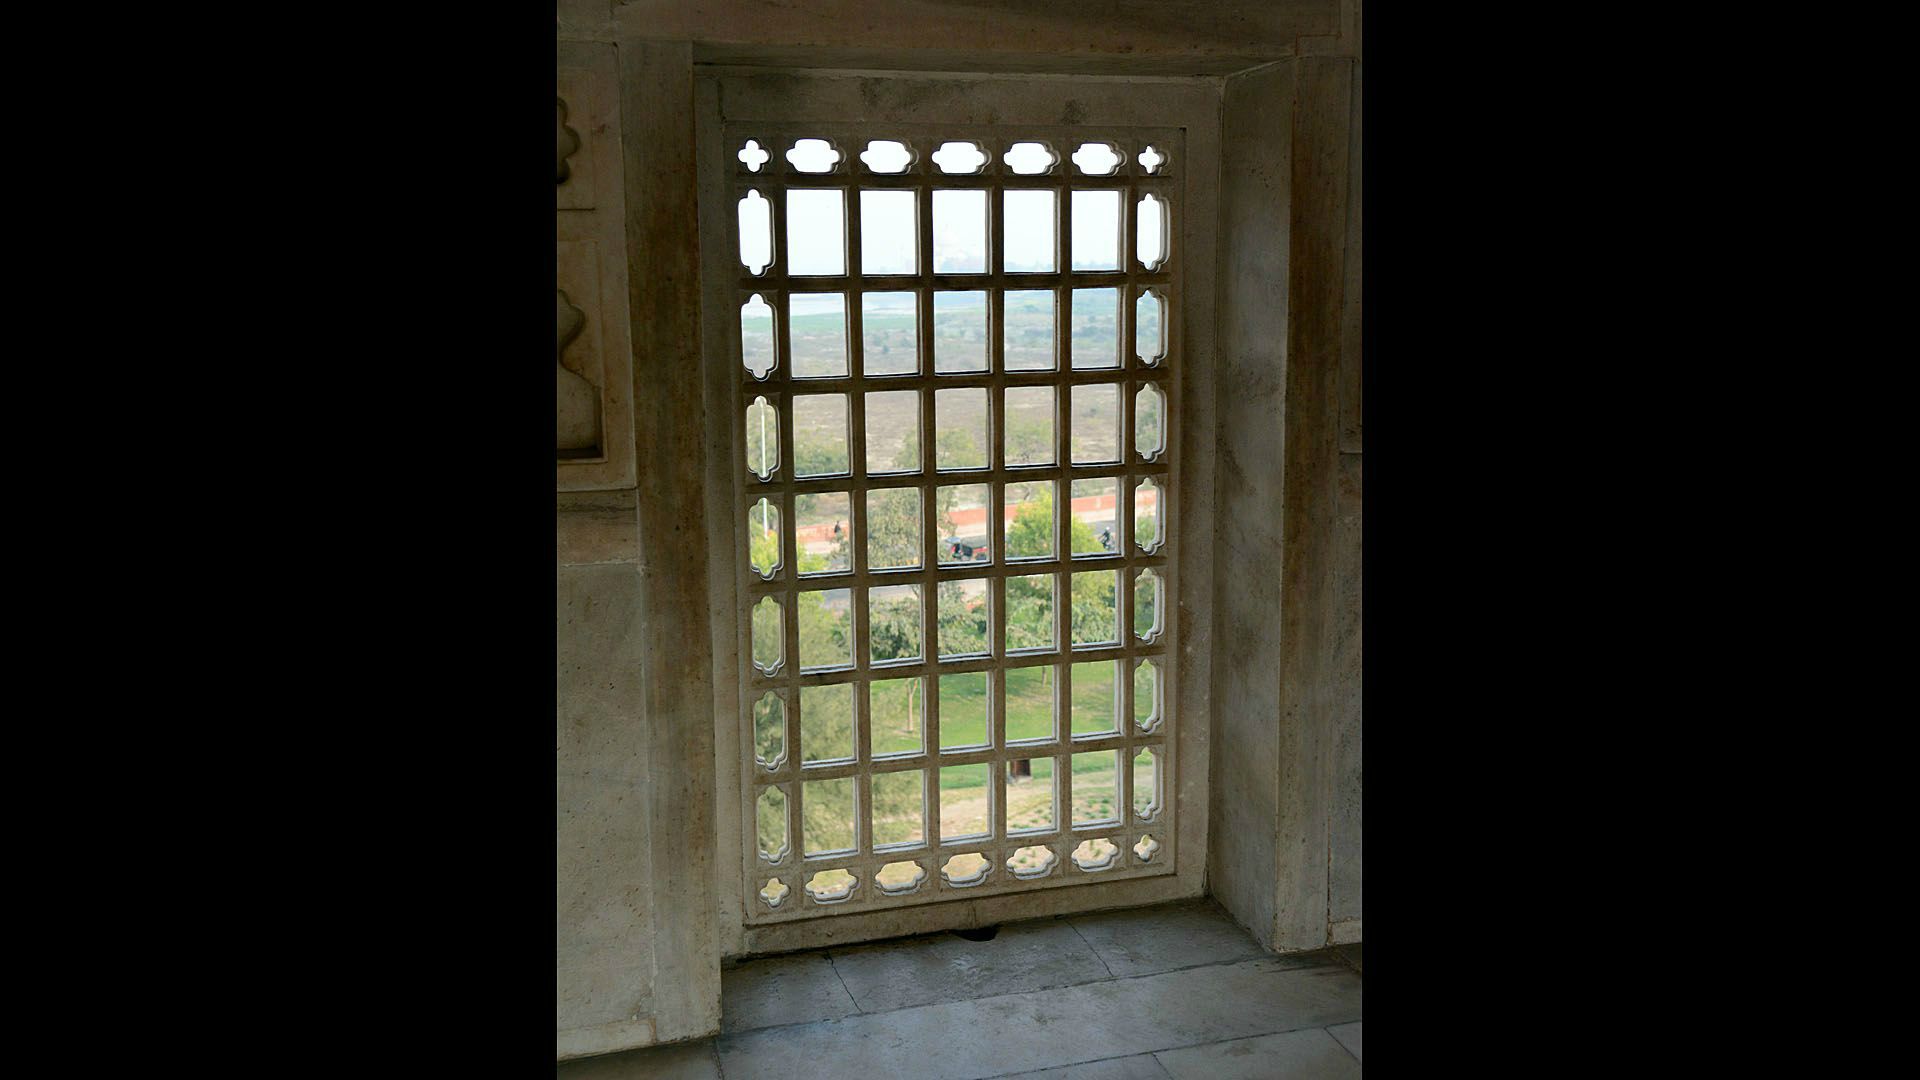 Fort Agra (Czerwony Fort) - zespół budowli fortecznych (wewnątrz pałacowych) z czerwonego piaskowca